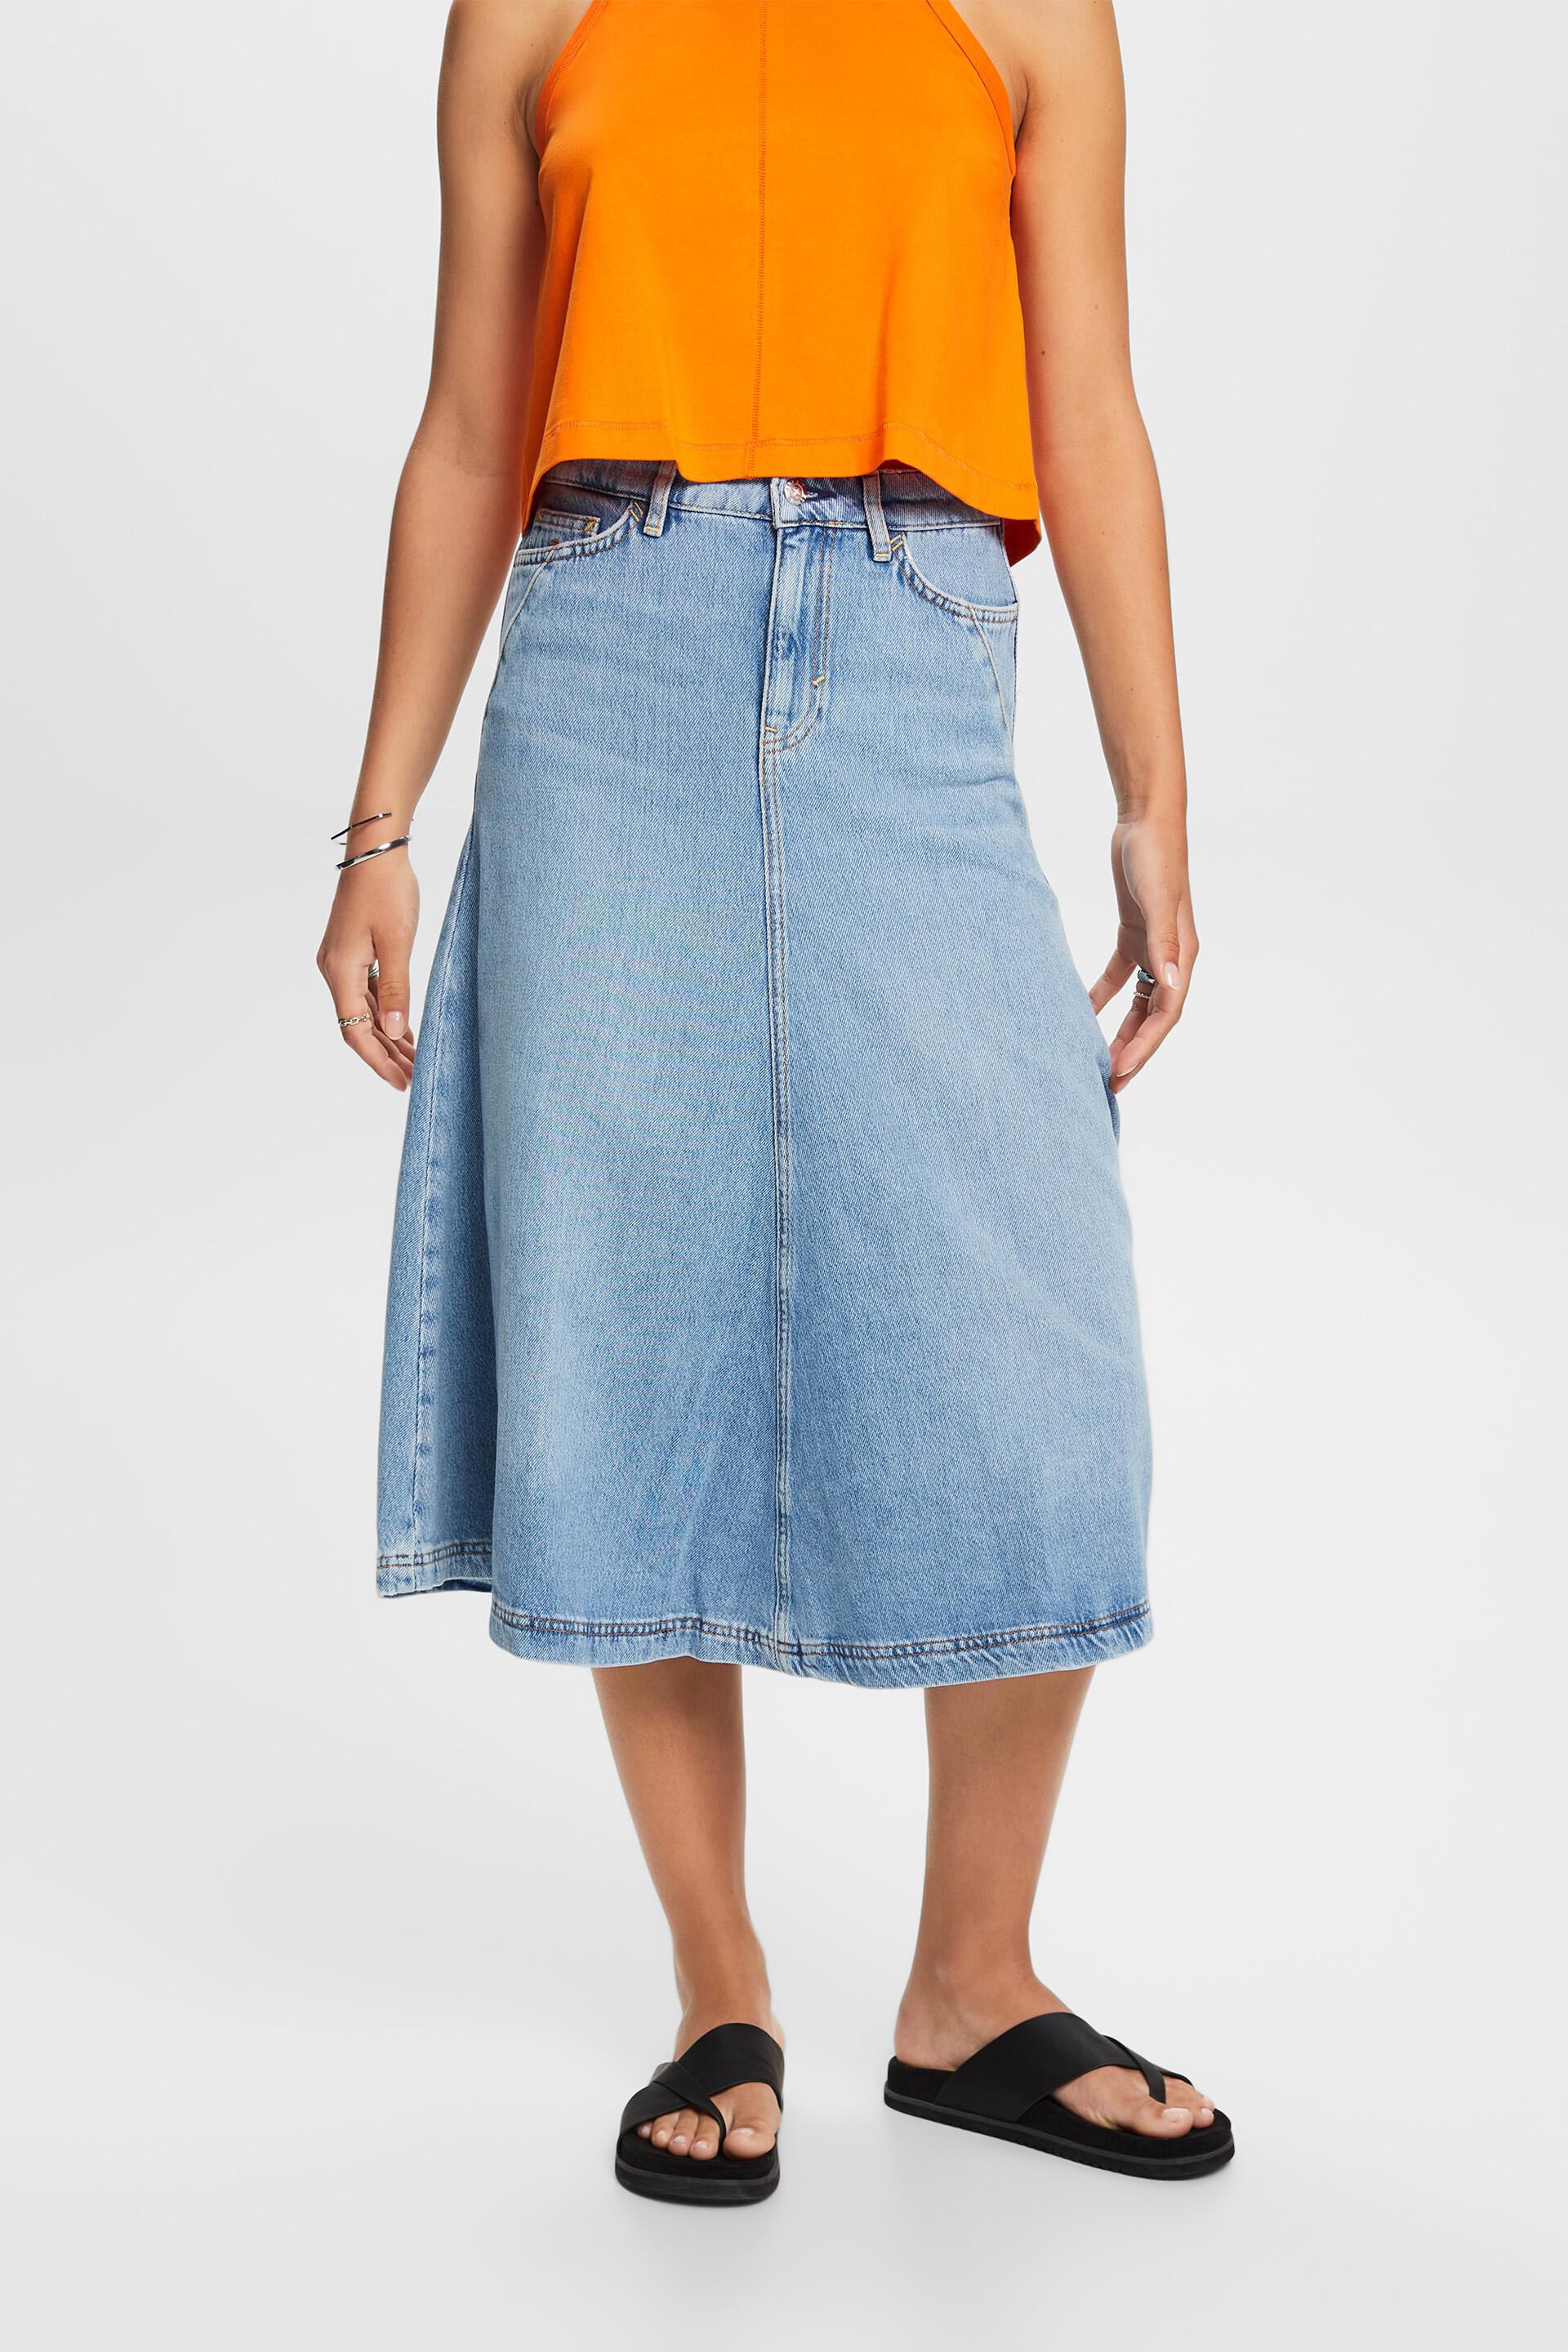 Esprit Damen Jeans midi skirt, cotton blend